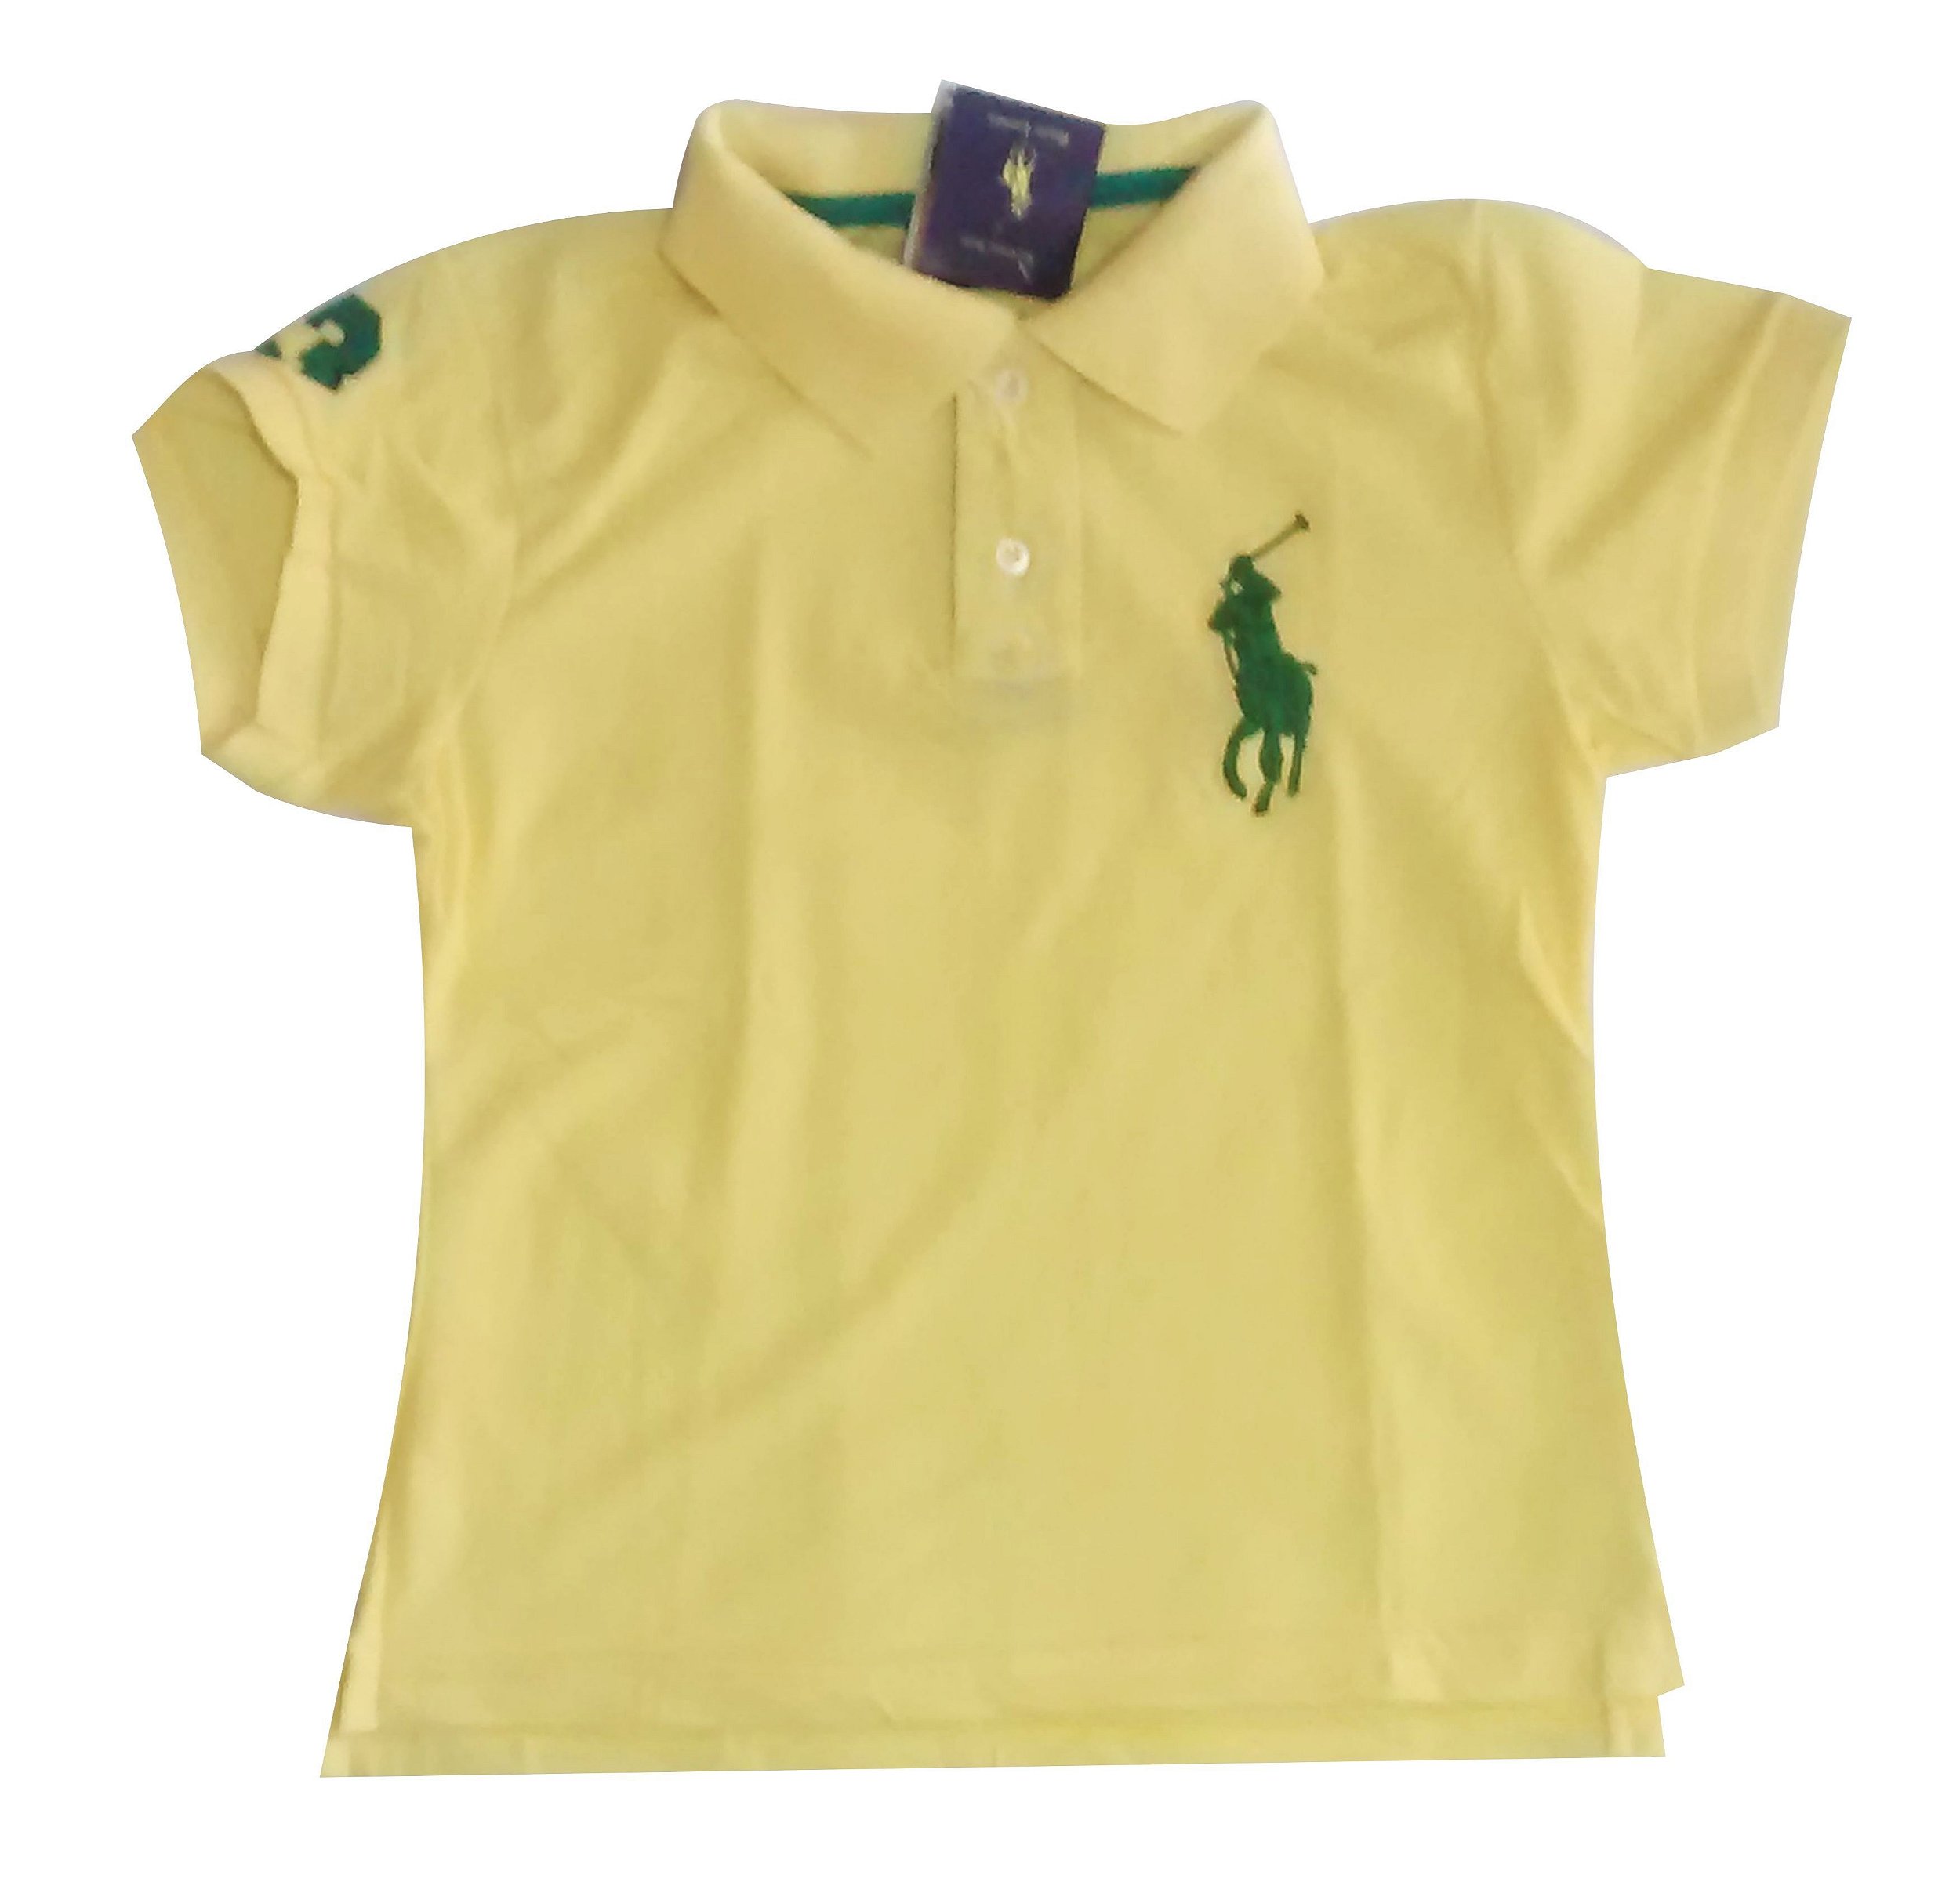 Camisa Polo Feminina Ralph Lauren - Tamanho M - Você é o nosso diferencial.